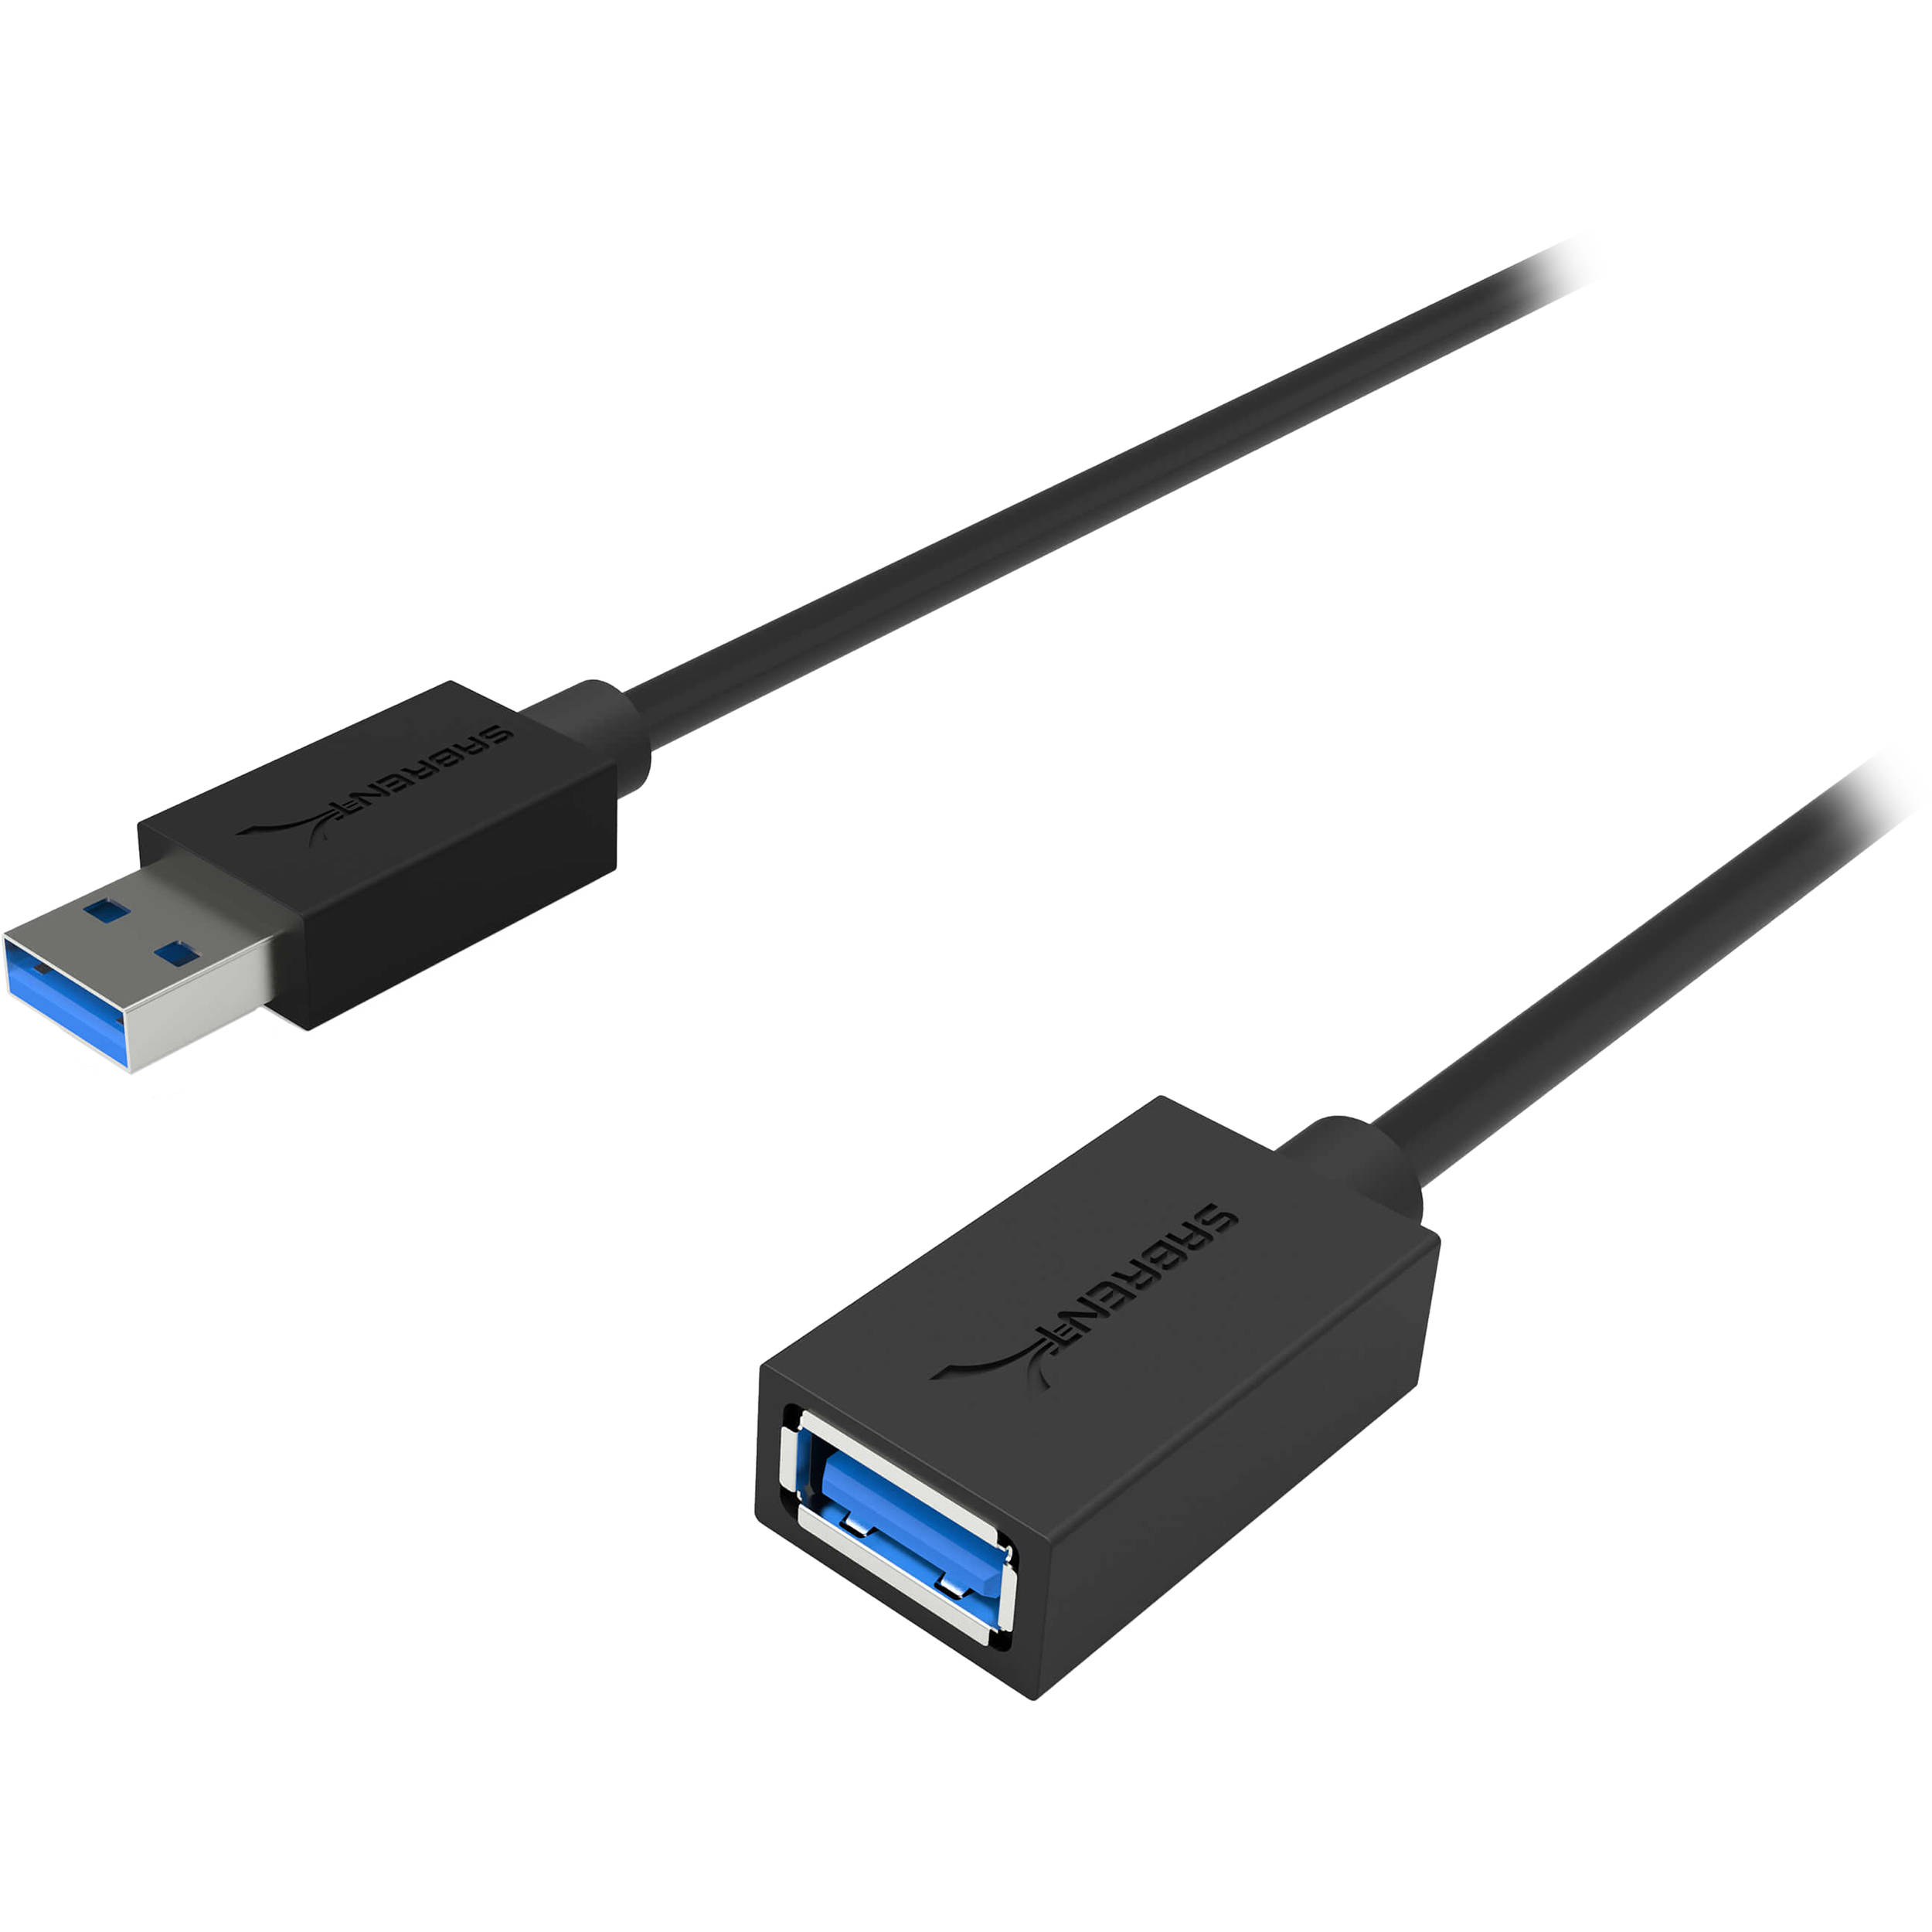 Usb c gen1. USB 3.2 gen1 Type-a разъем. USB 3.2 gen1 Micro-b. USB 3.1 Type-c. USB 3.2 gen1 Type-a - USB 3.2 gen1 Type-c.